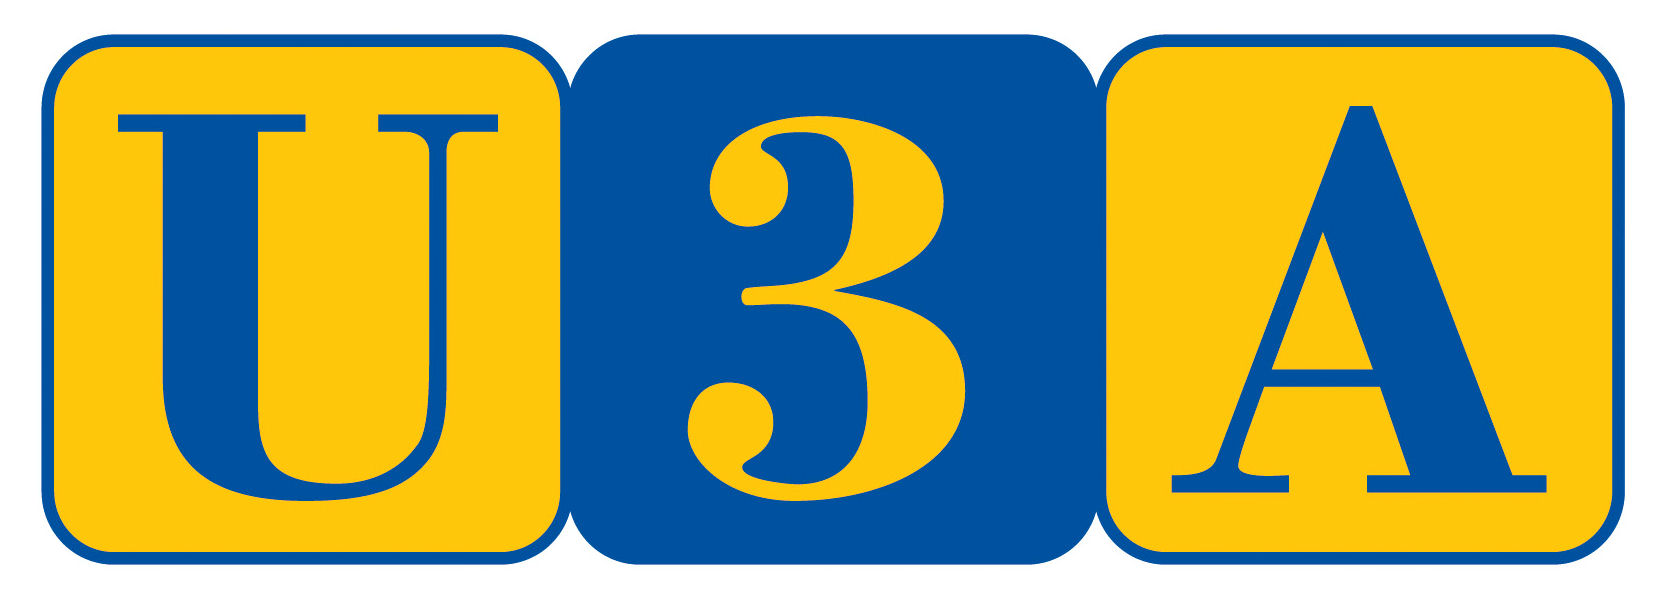 U3A official logo